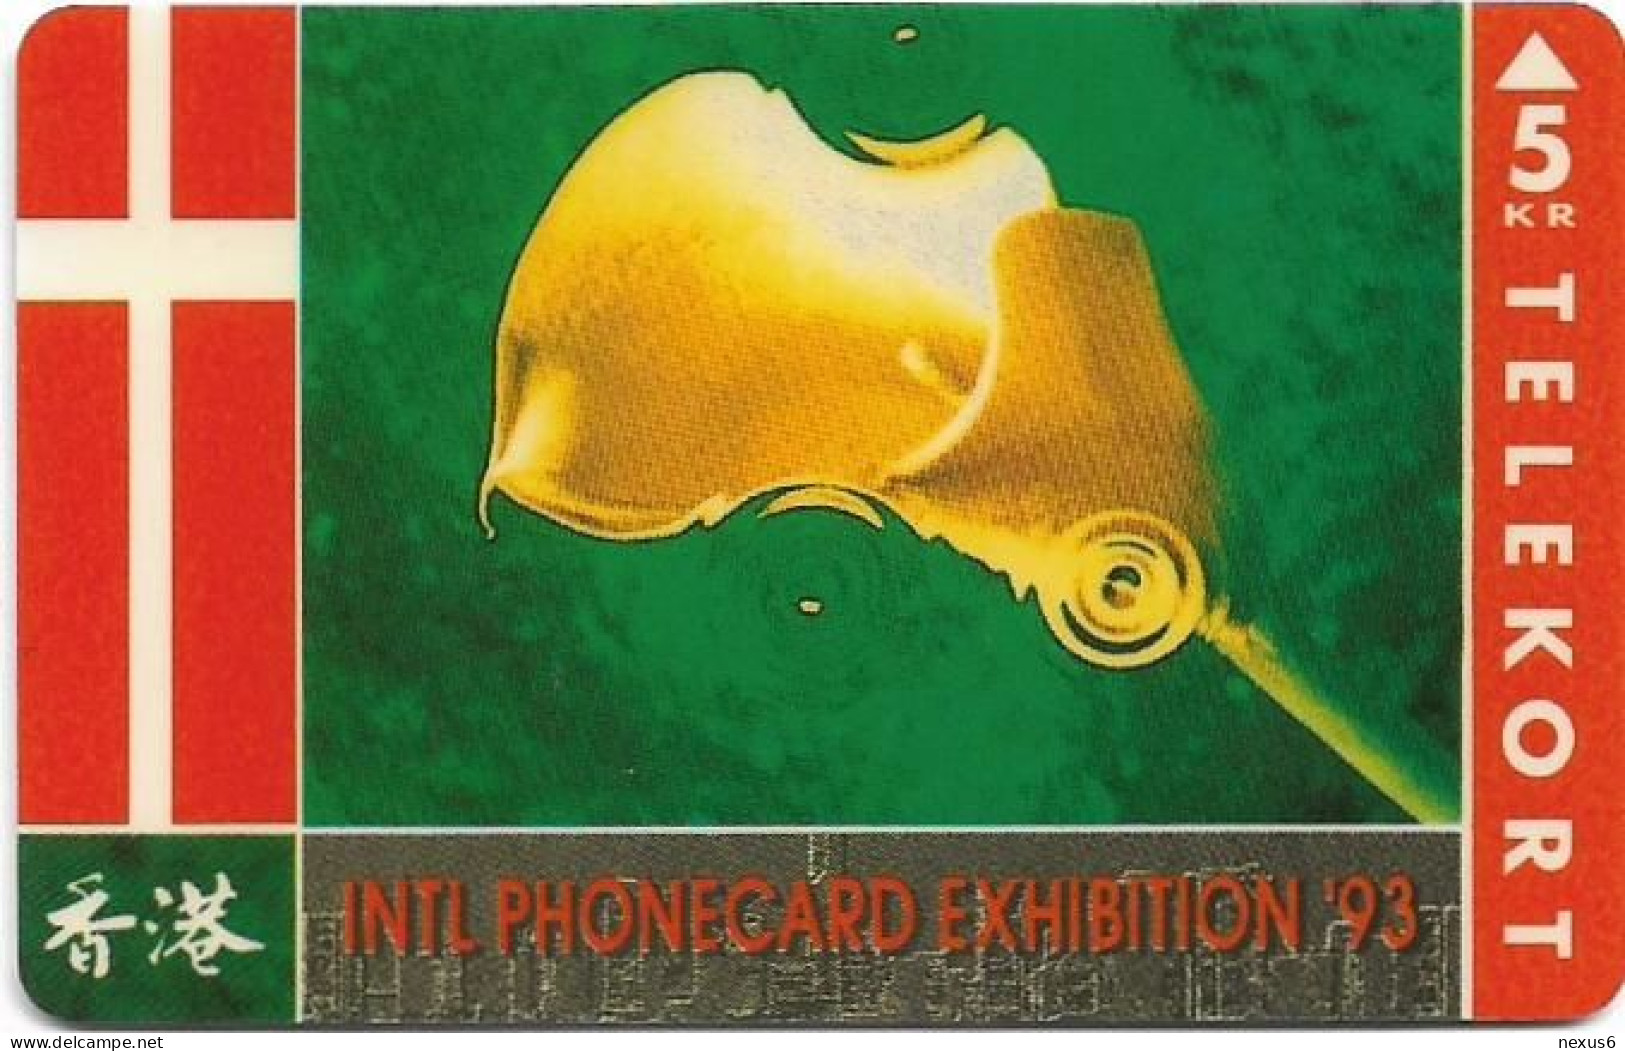 Denmark - KTAS - Intl. Phonecard Expo '93 Hong Kong - TDKP022 - 04.1993, 5kr, 4.000ex, Used - Dänemark